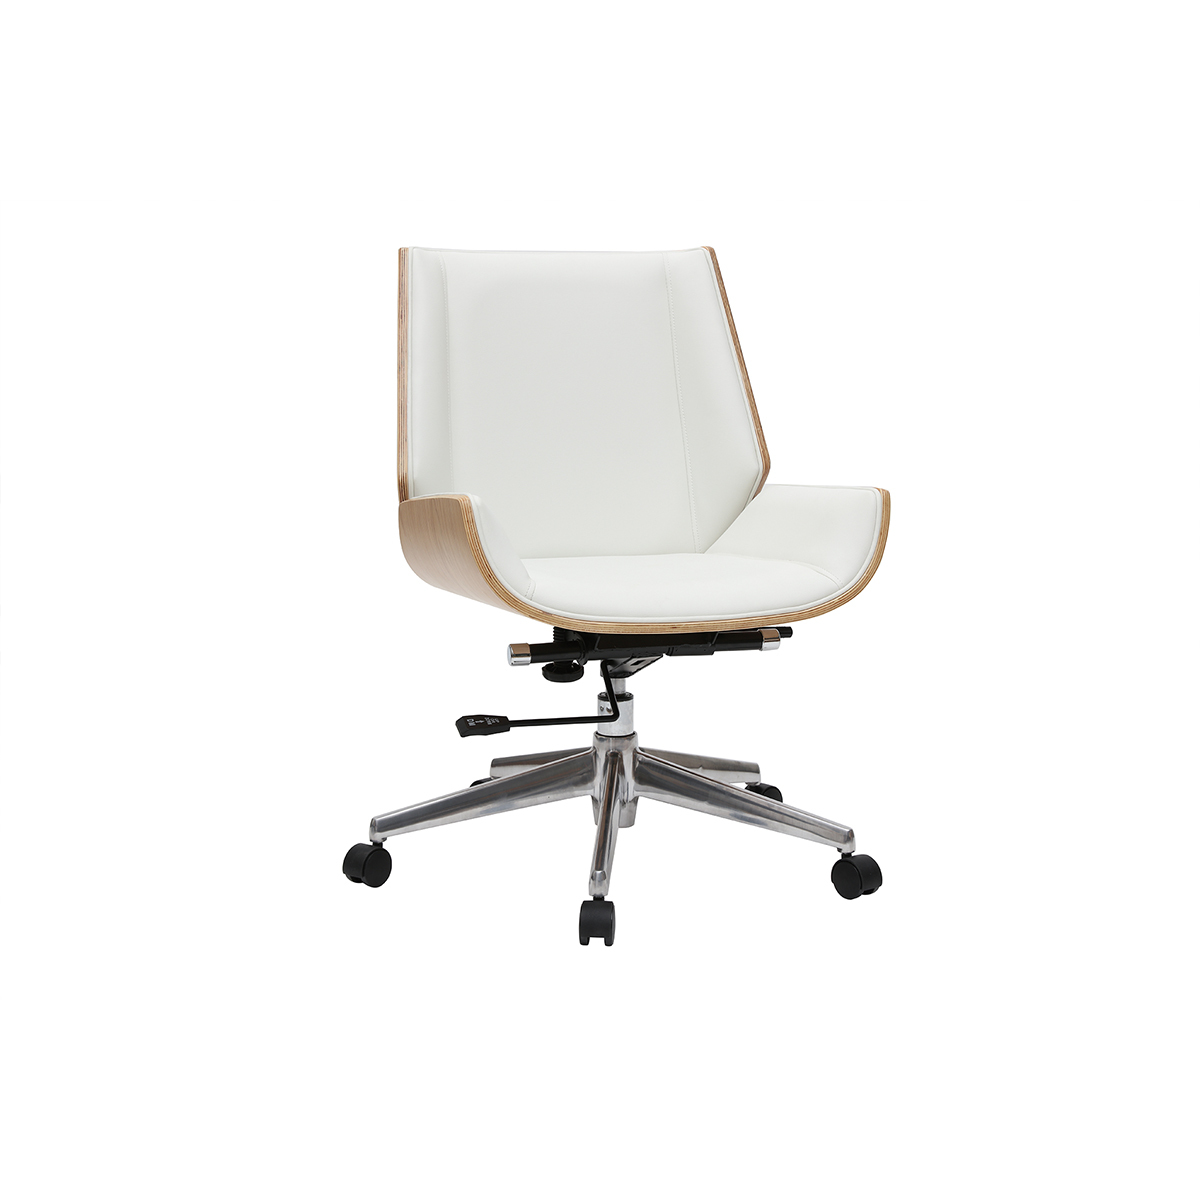 Chaise de bureau à roulettes design blanc, bois clair et acier chromé CURVED vue1